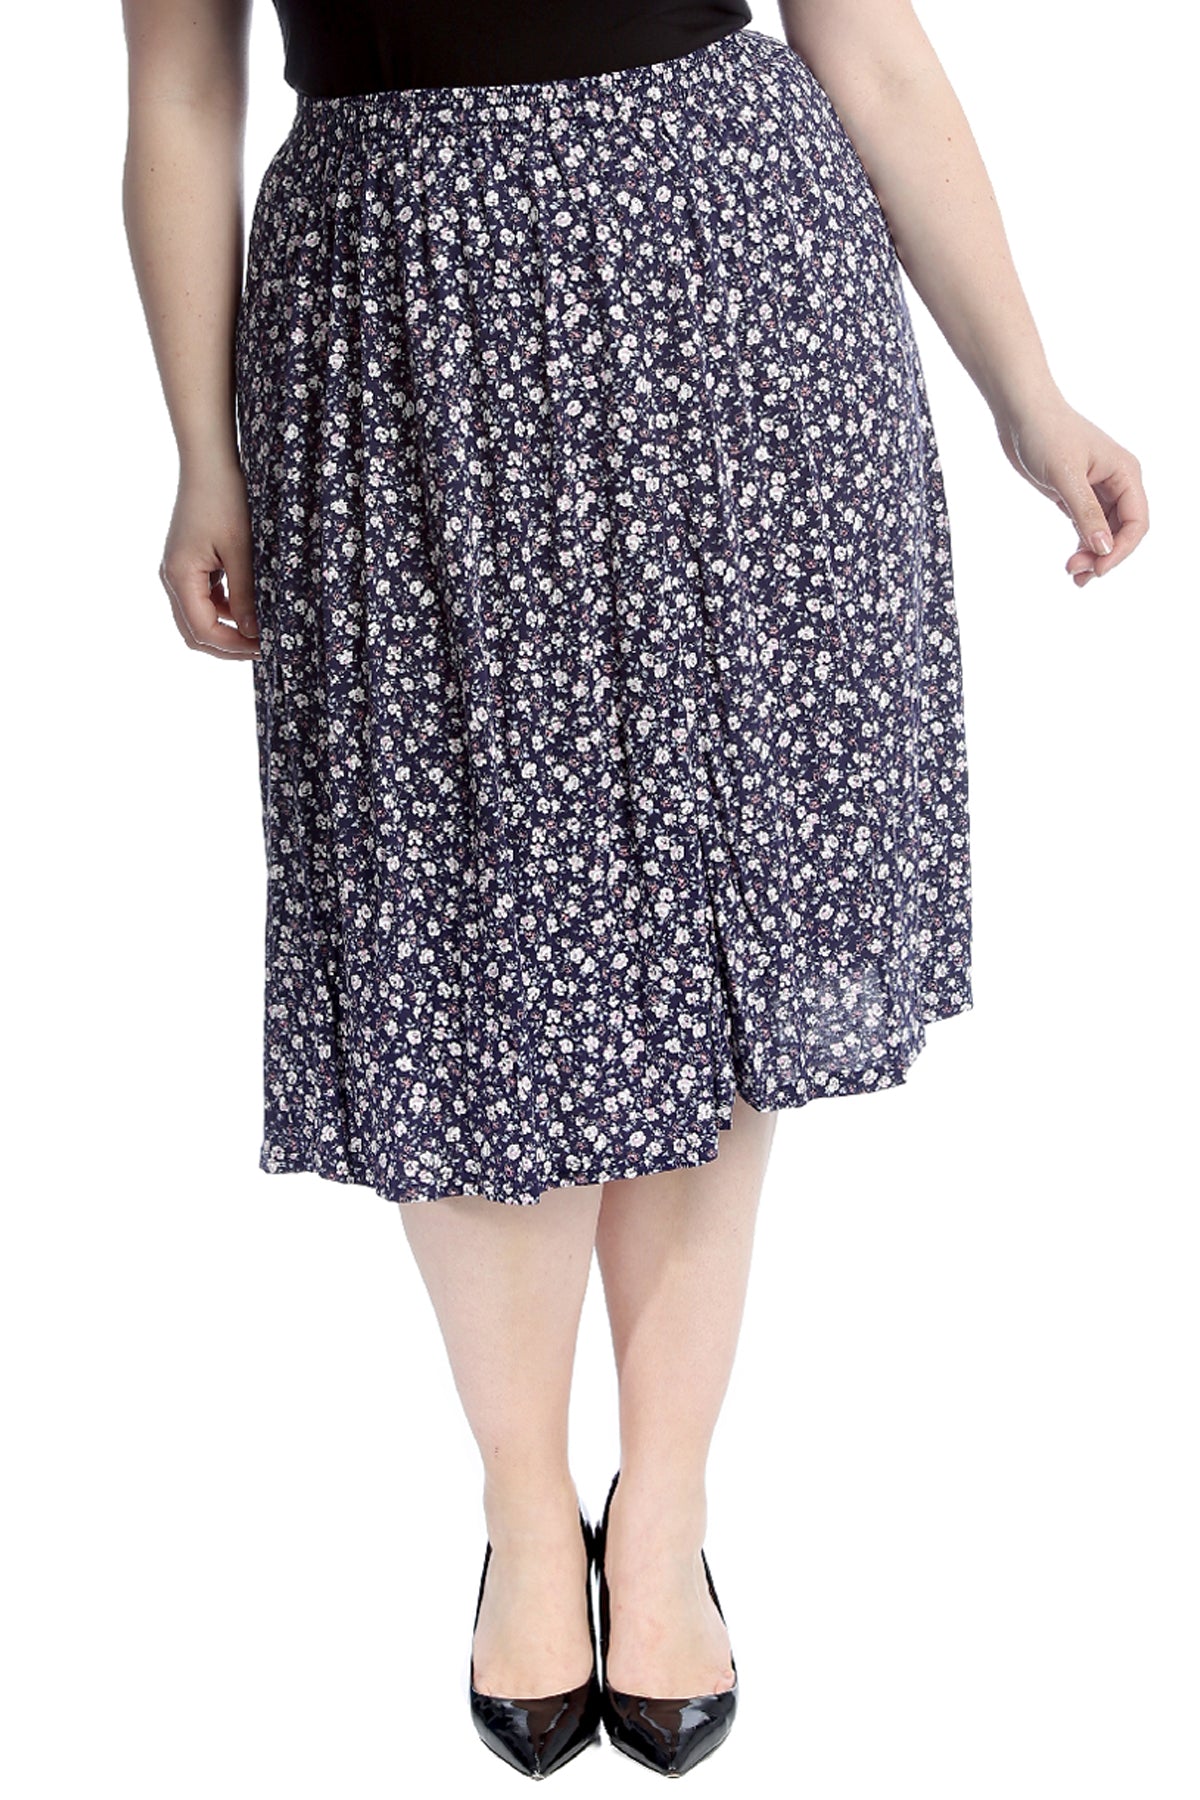 5051 Small Floral Print Skater Skirt